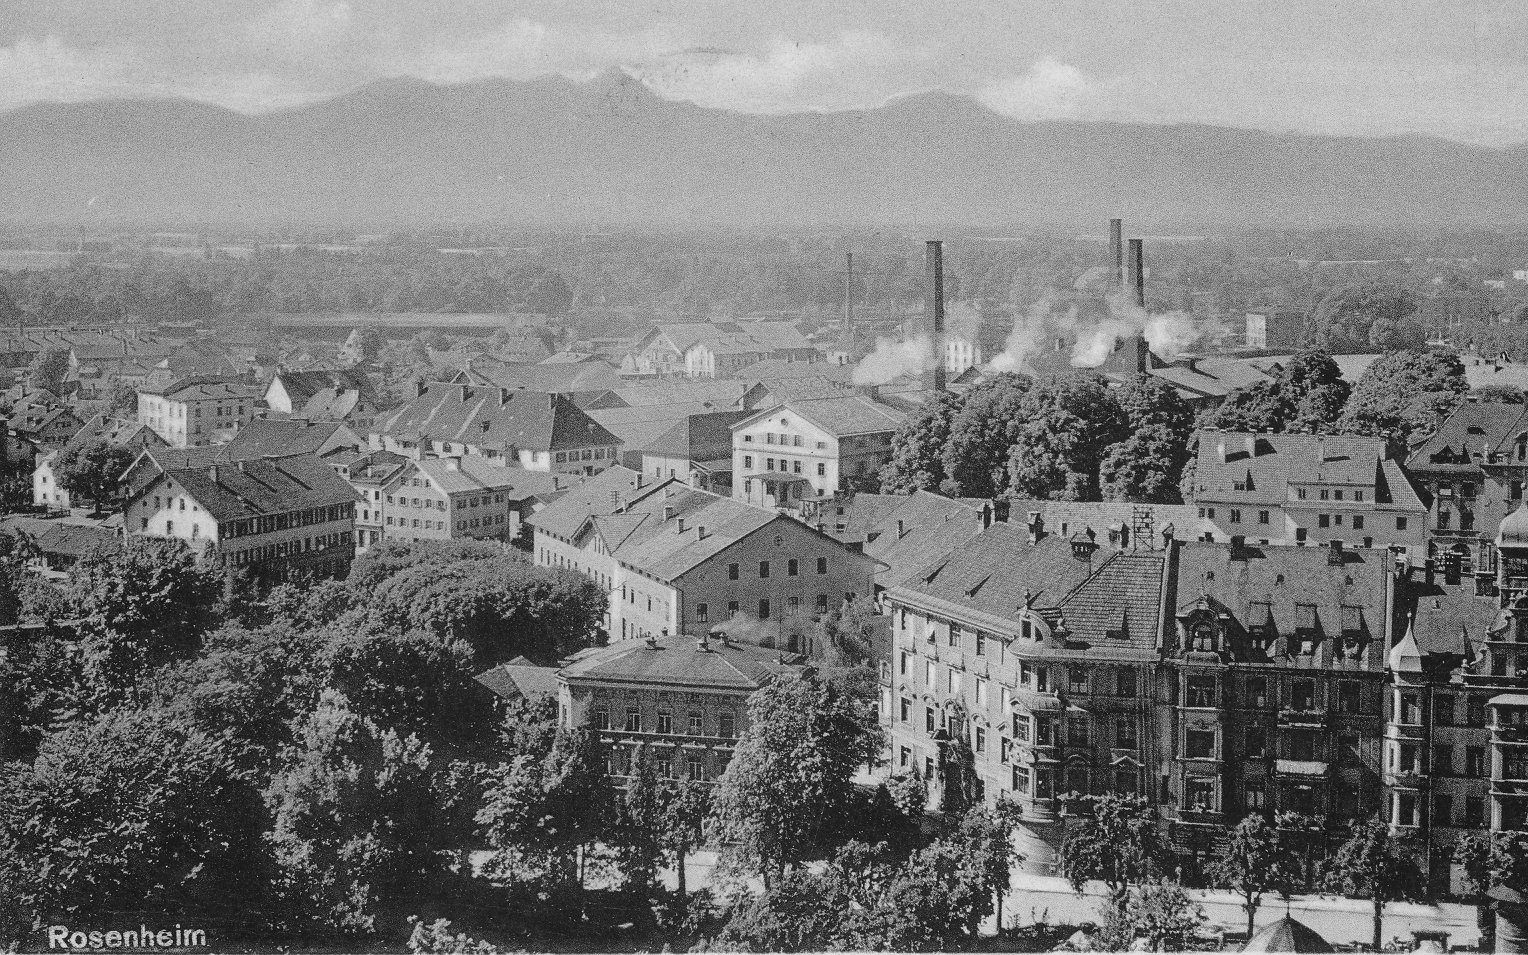 Blick auf Rosenheim im Jahr 1940. Foto: Archiv Innpuls.me